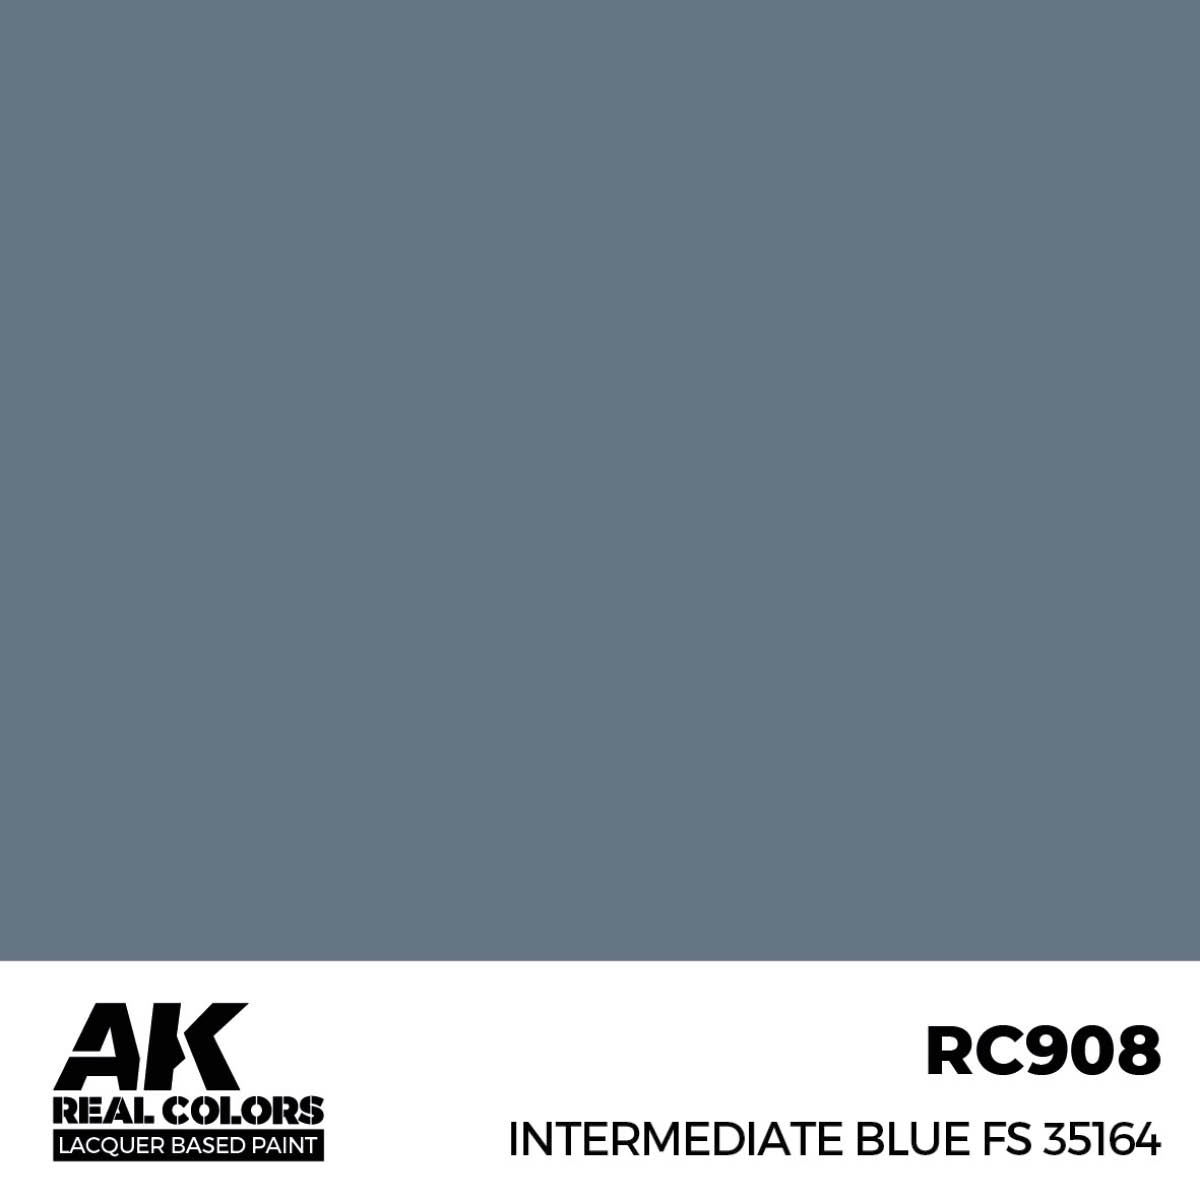 Intermediate Blue FS 35164